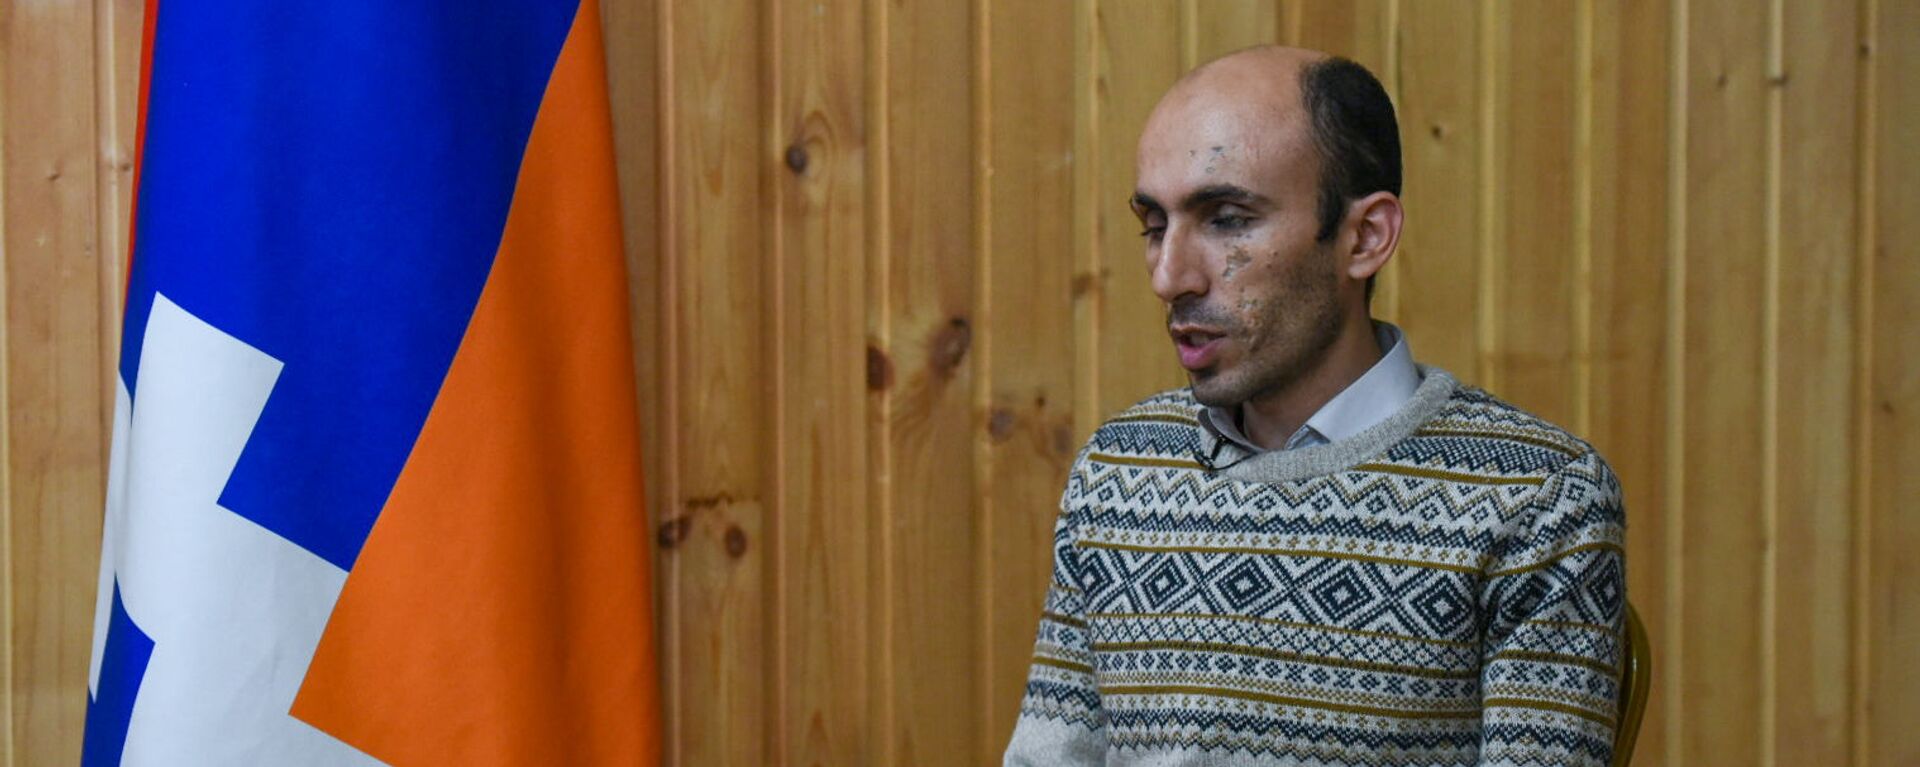 Защитник прав человека Карабаха Артак Бегларян - Sputnik Արմենիա, 1920, 28.05.2021